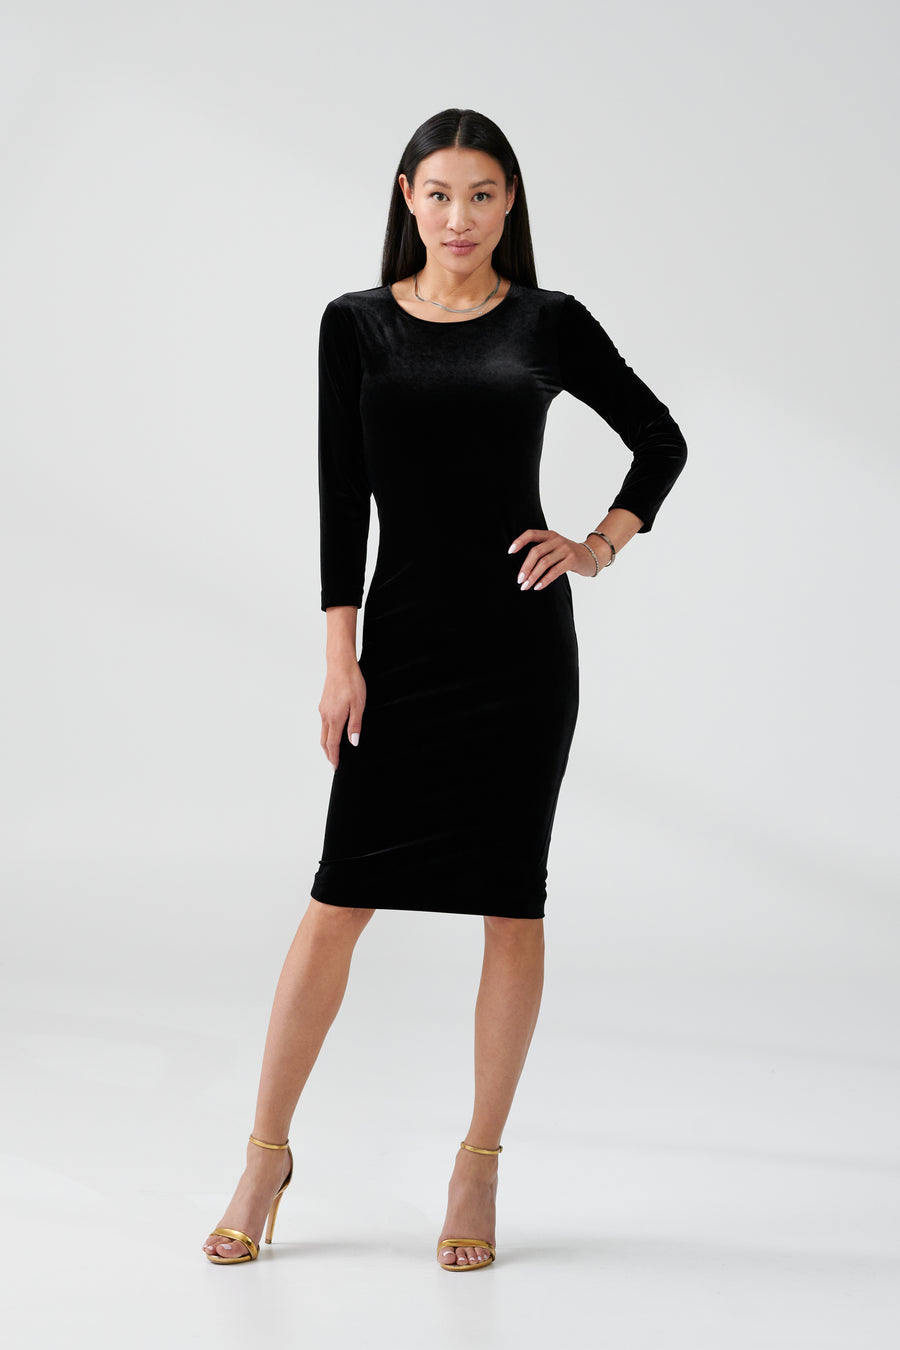 woman wearing long sleeve black dress